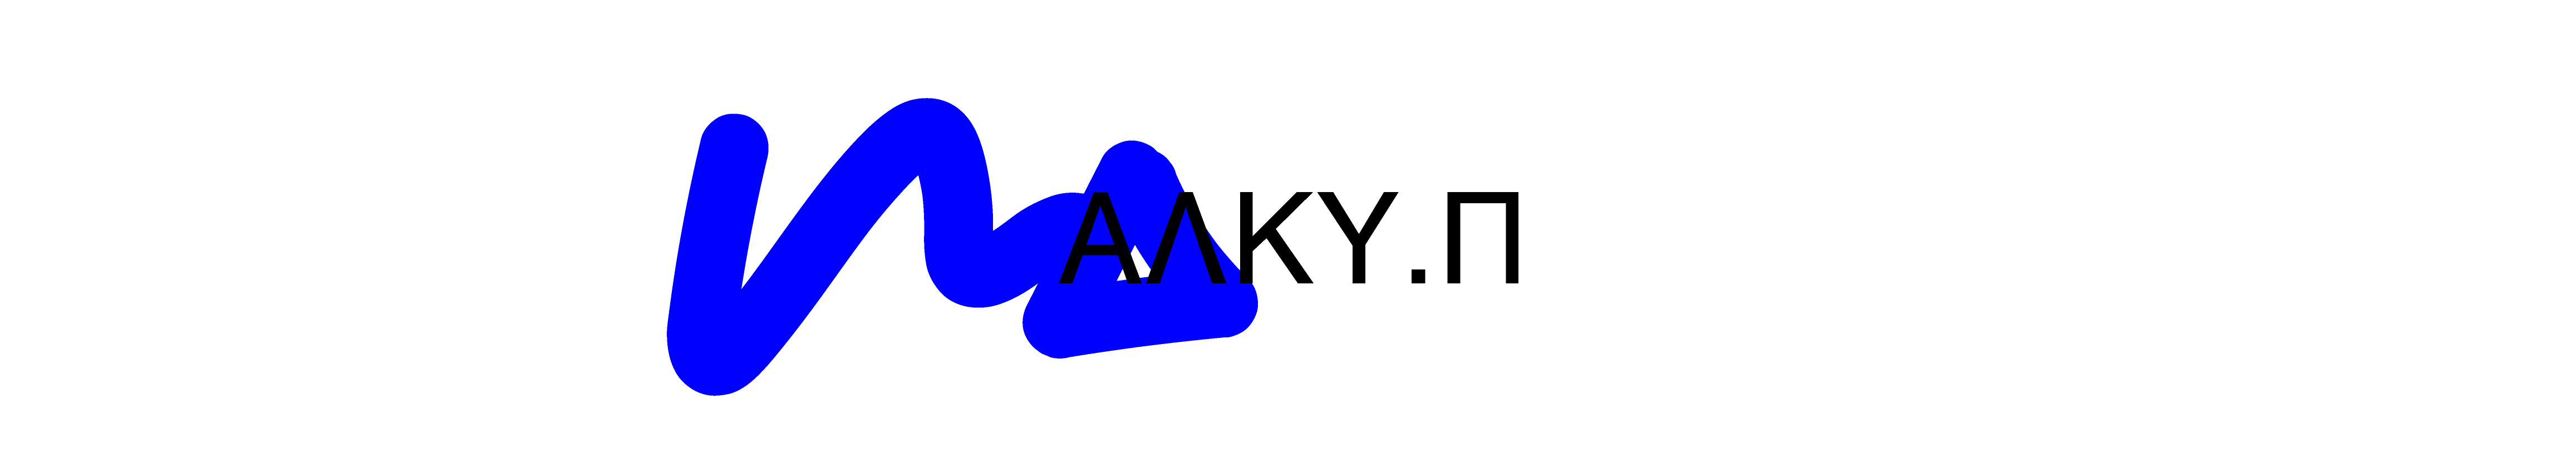 Banner de perfil de Alkioni Papachaviari Alki.P